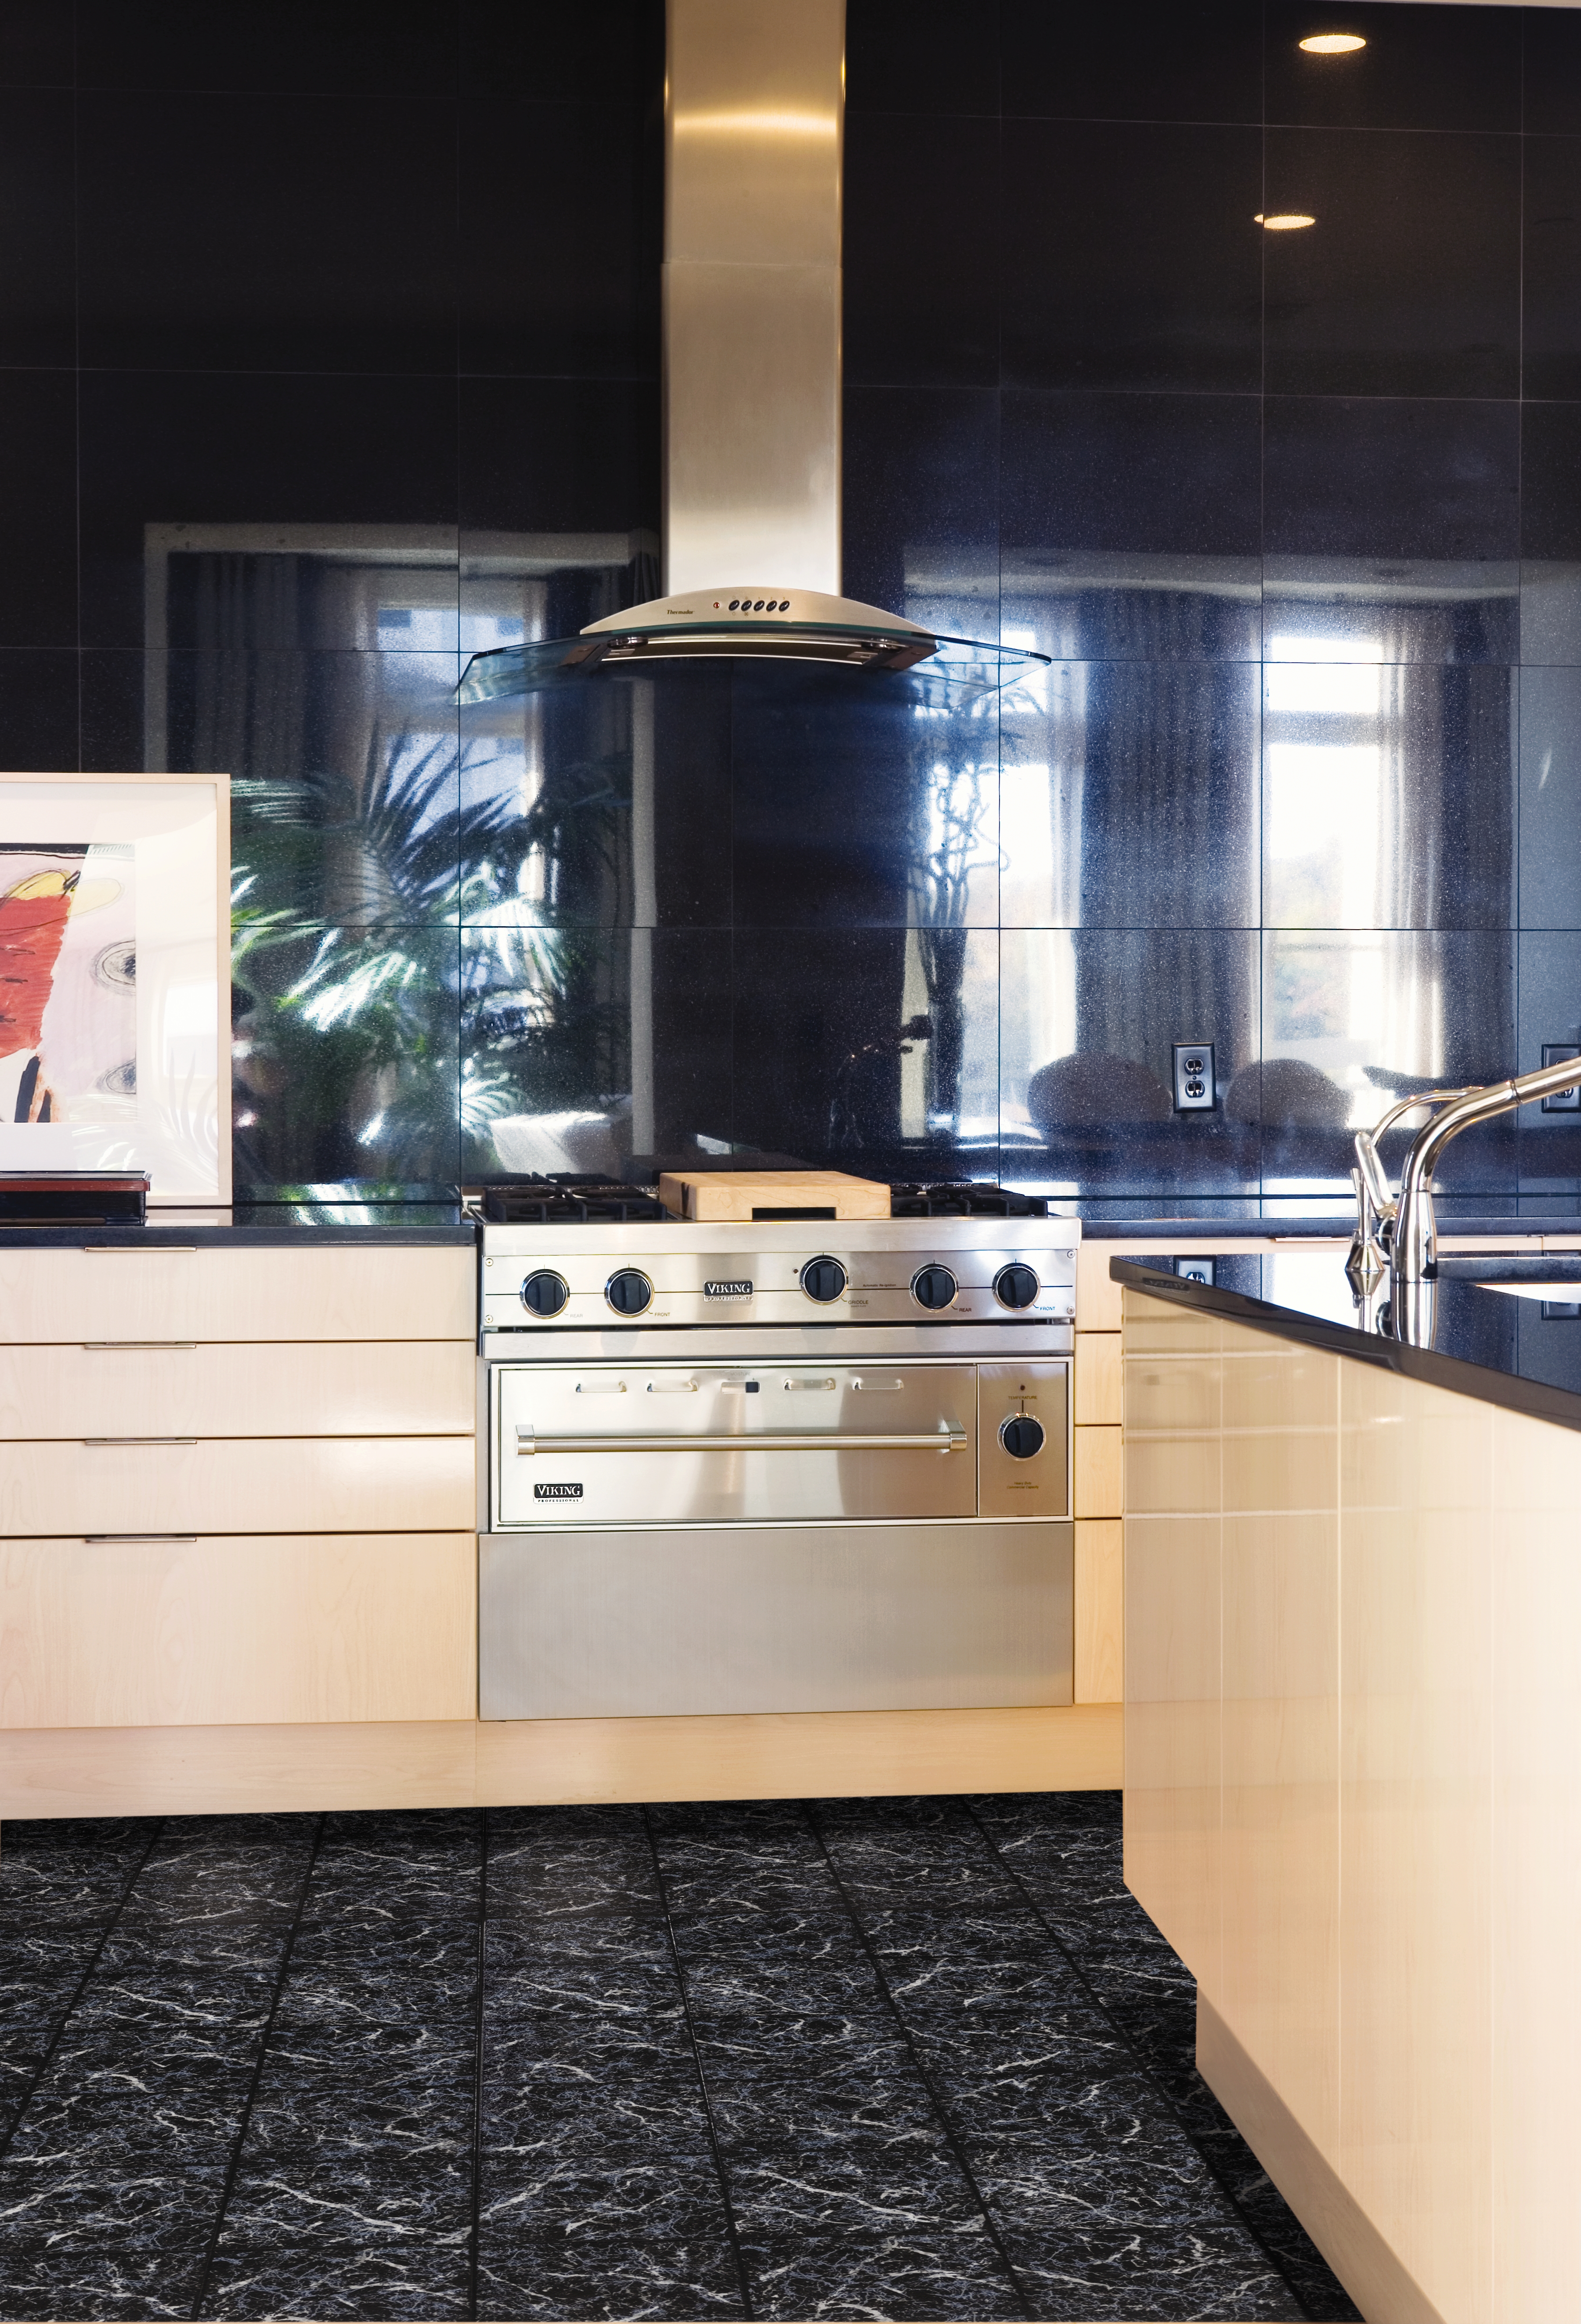 Kitchen Flooring Showdown: Linoleum vs. Luxury Vinyl Tile Flooring – Which One Wins? 4